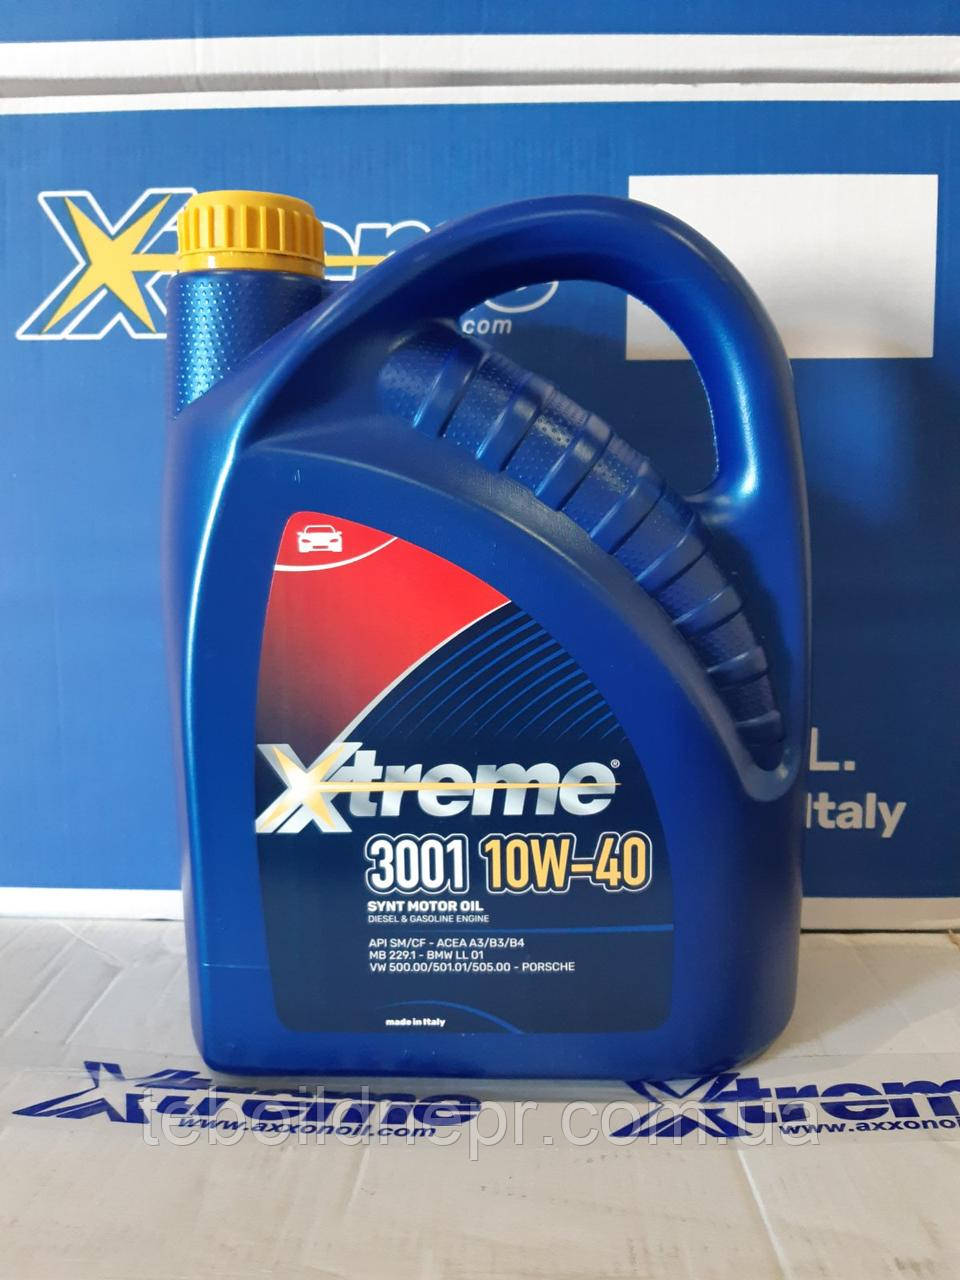 Xtreme MOTO 4T 10W40 – Axxonoil